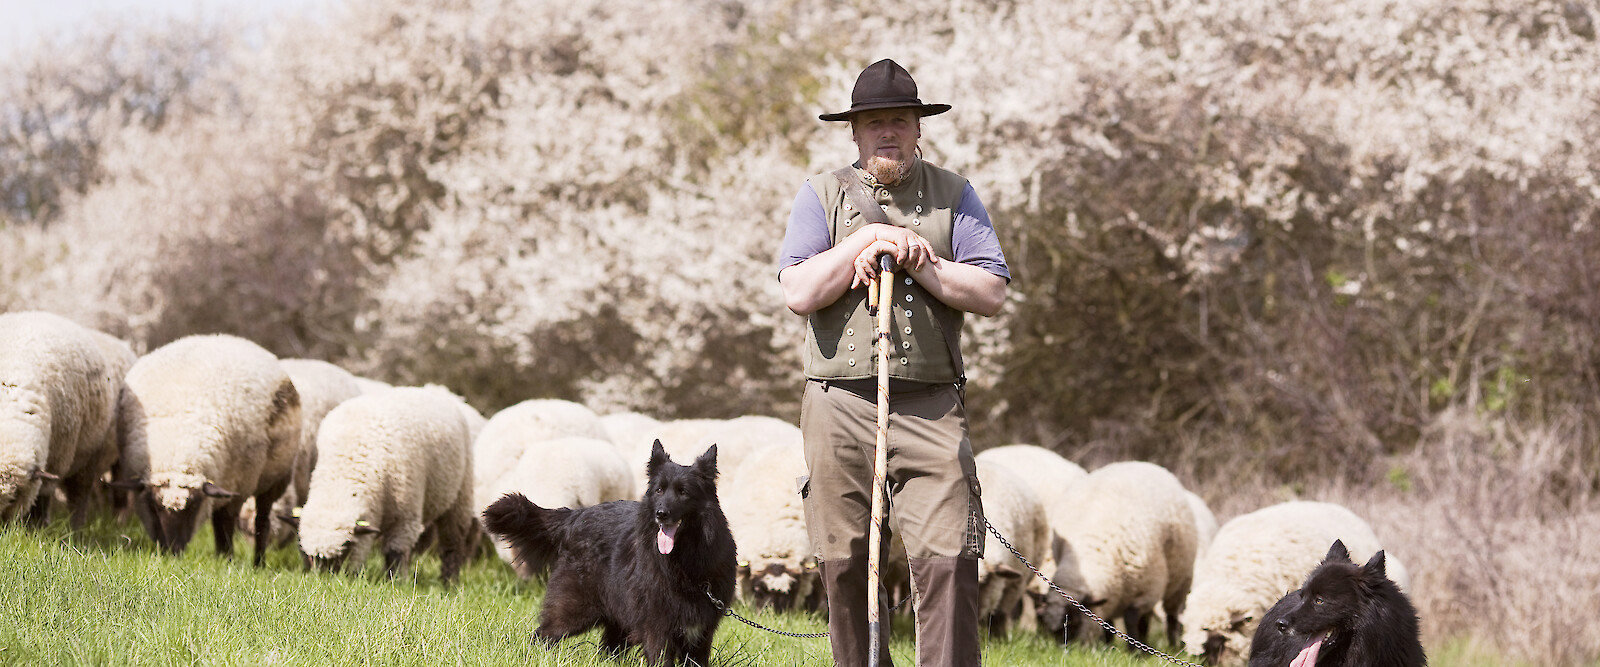 Schäfer mit Hunden vor Herde auf Weide.